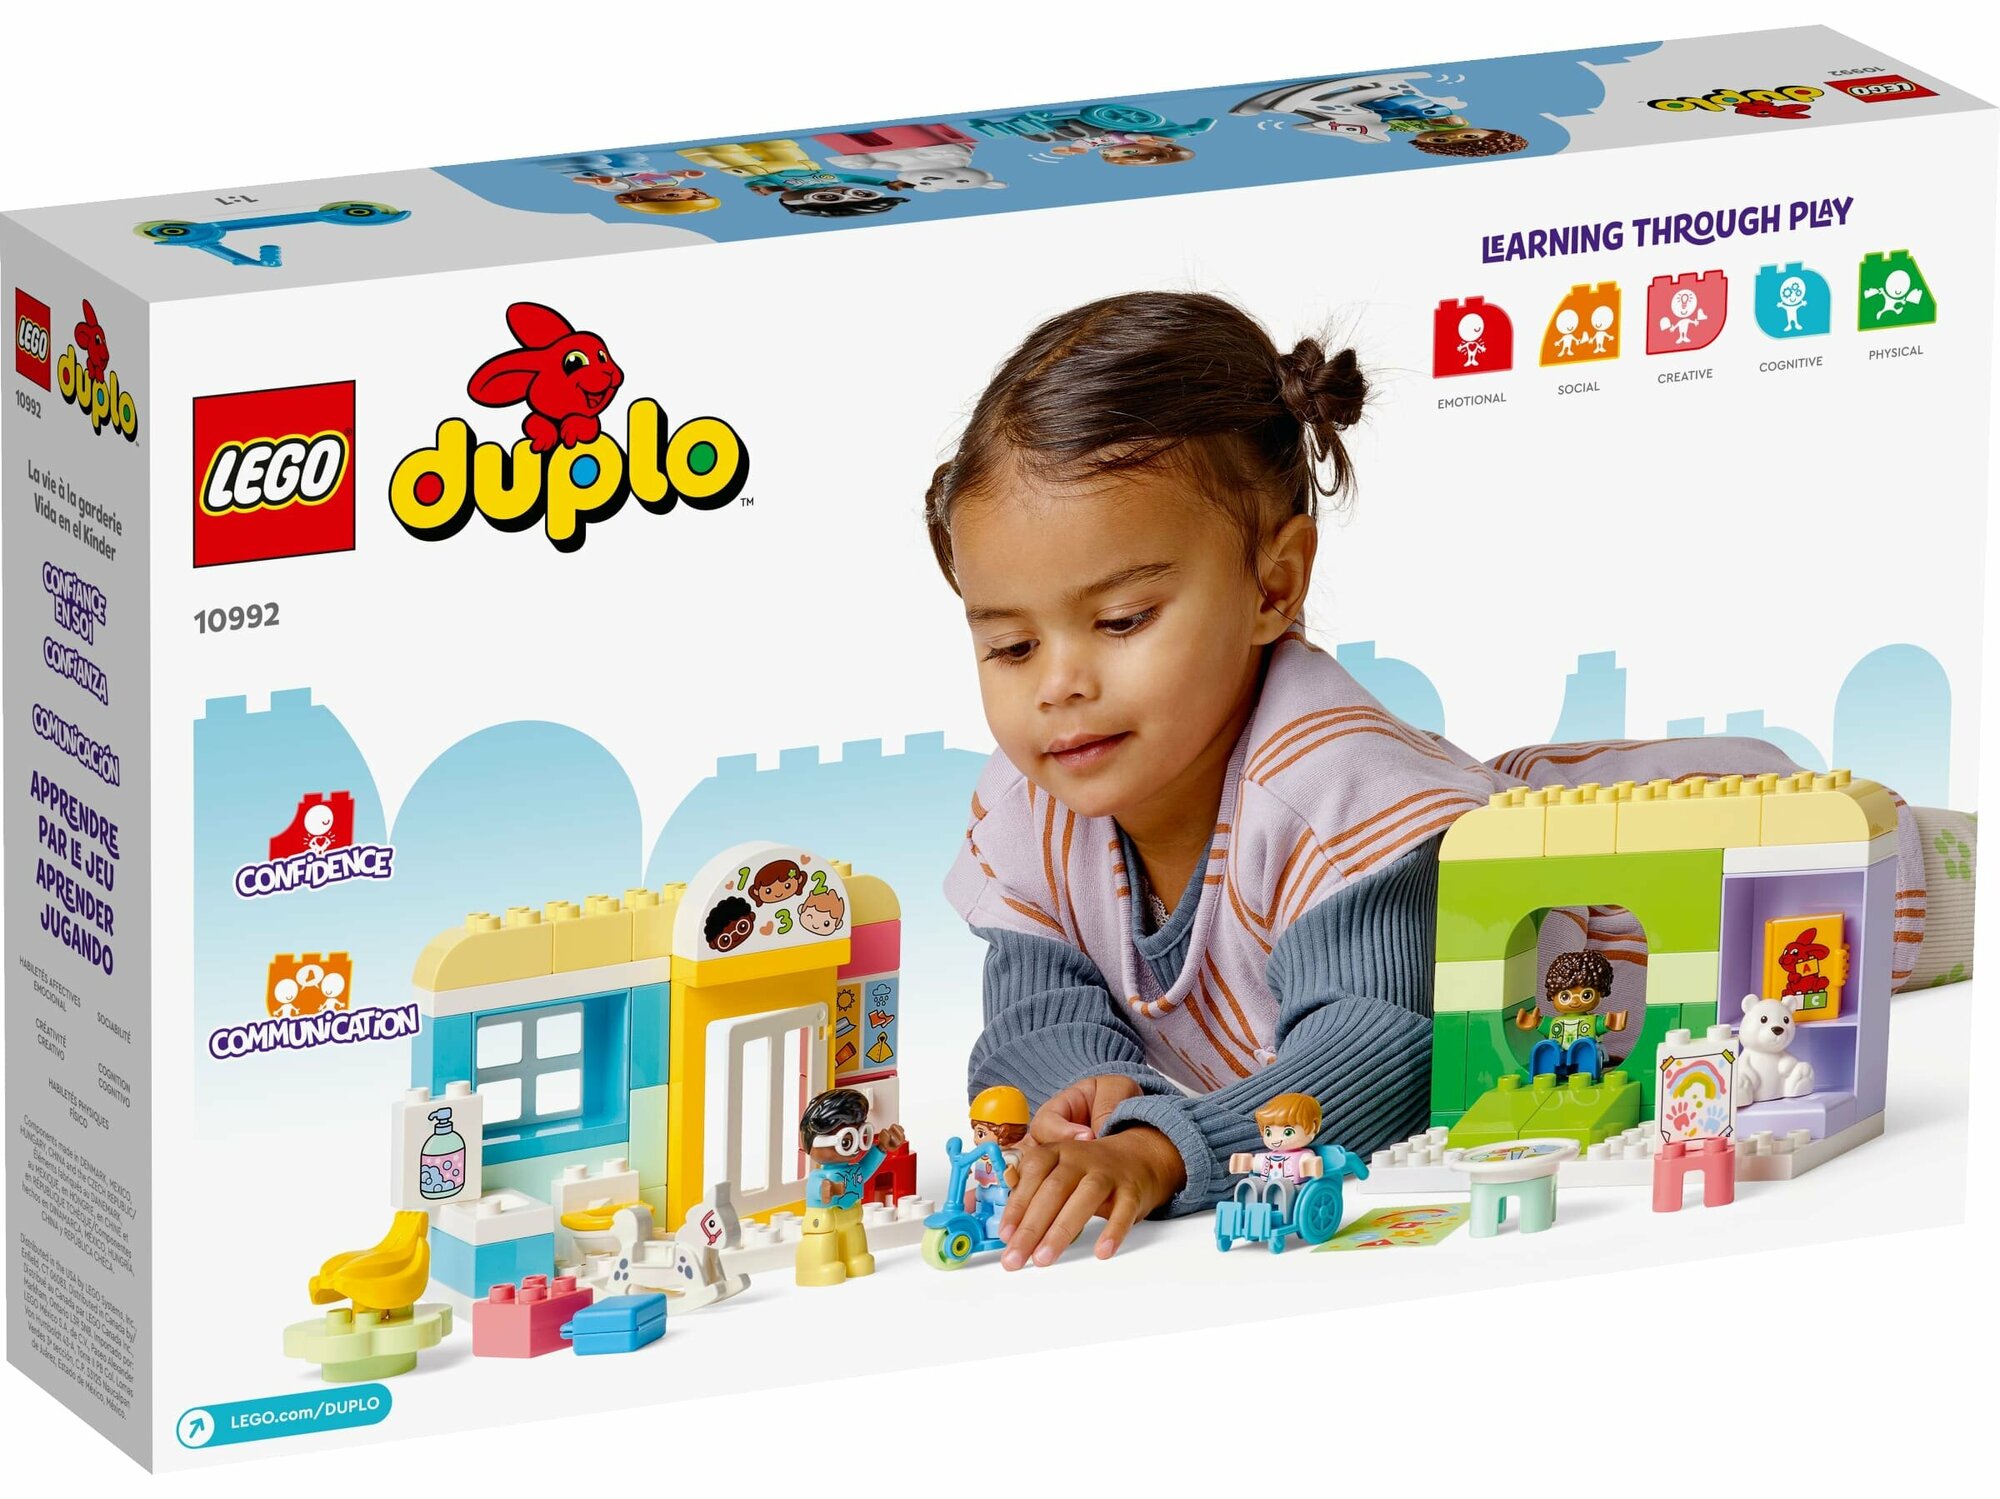 Конструктор Lego ® DUPLO® 10992 Жизнь в Детском саду